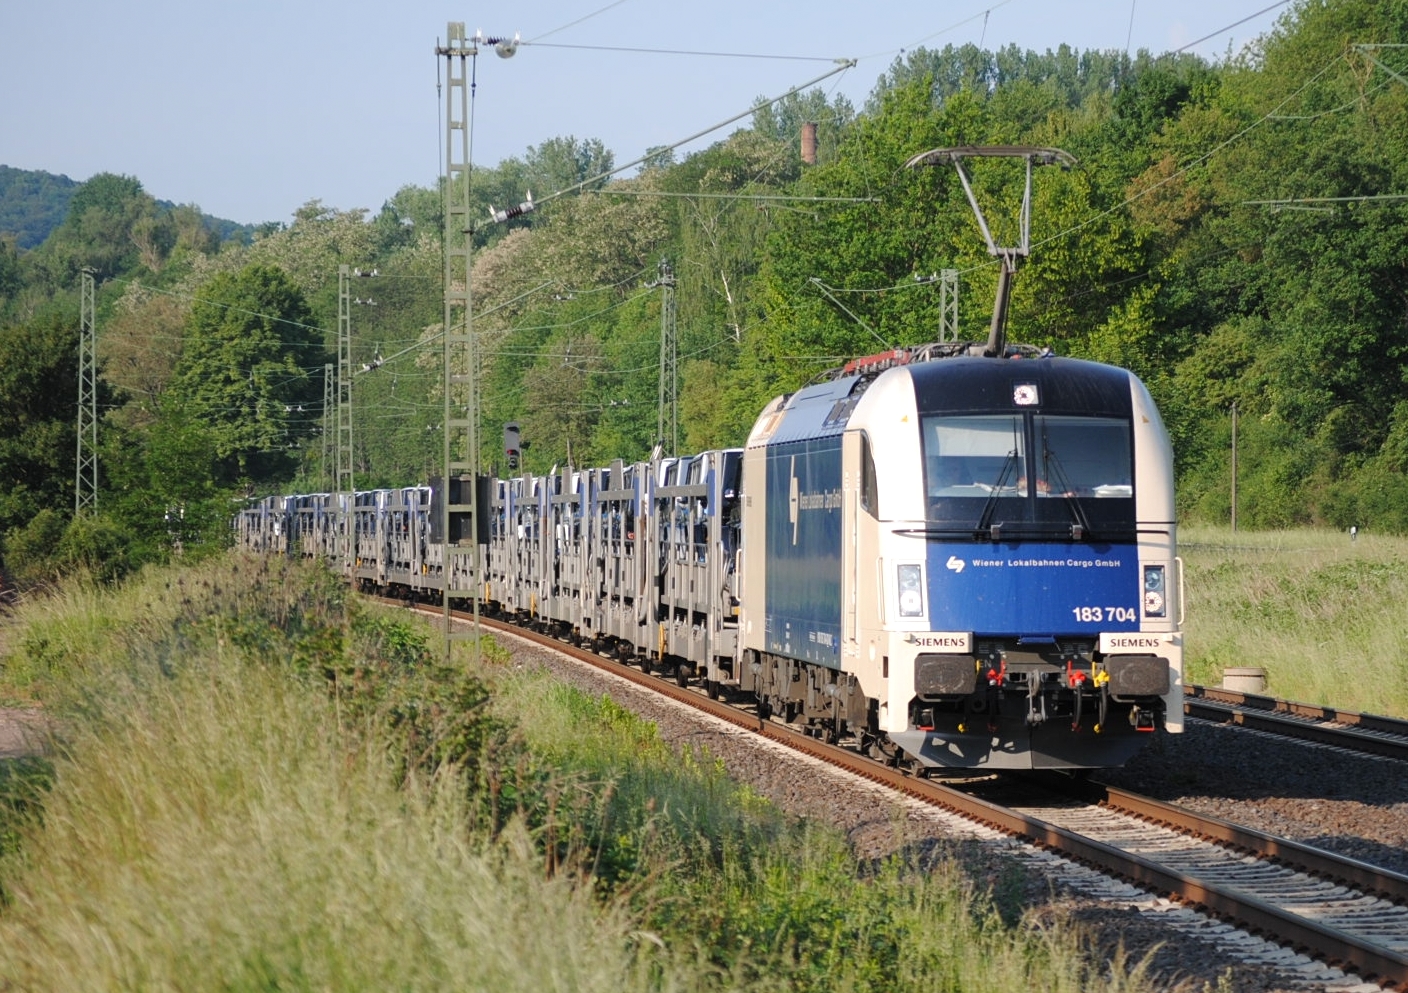 183 704 Wiener Lokalbahn